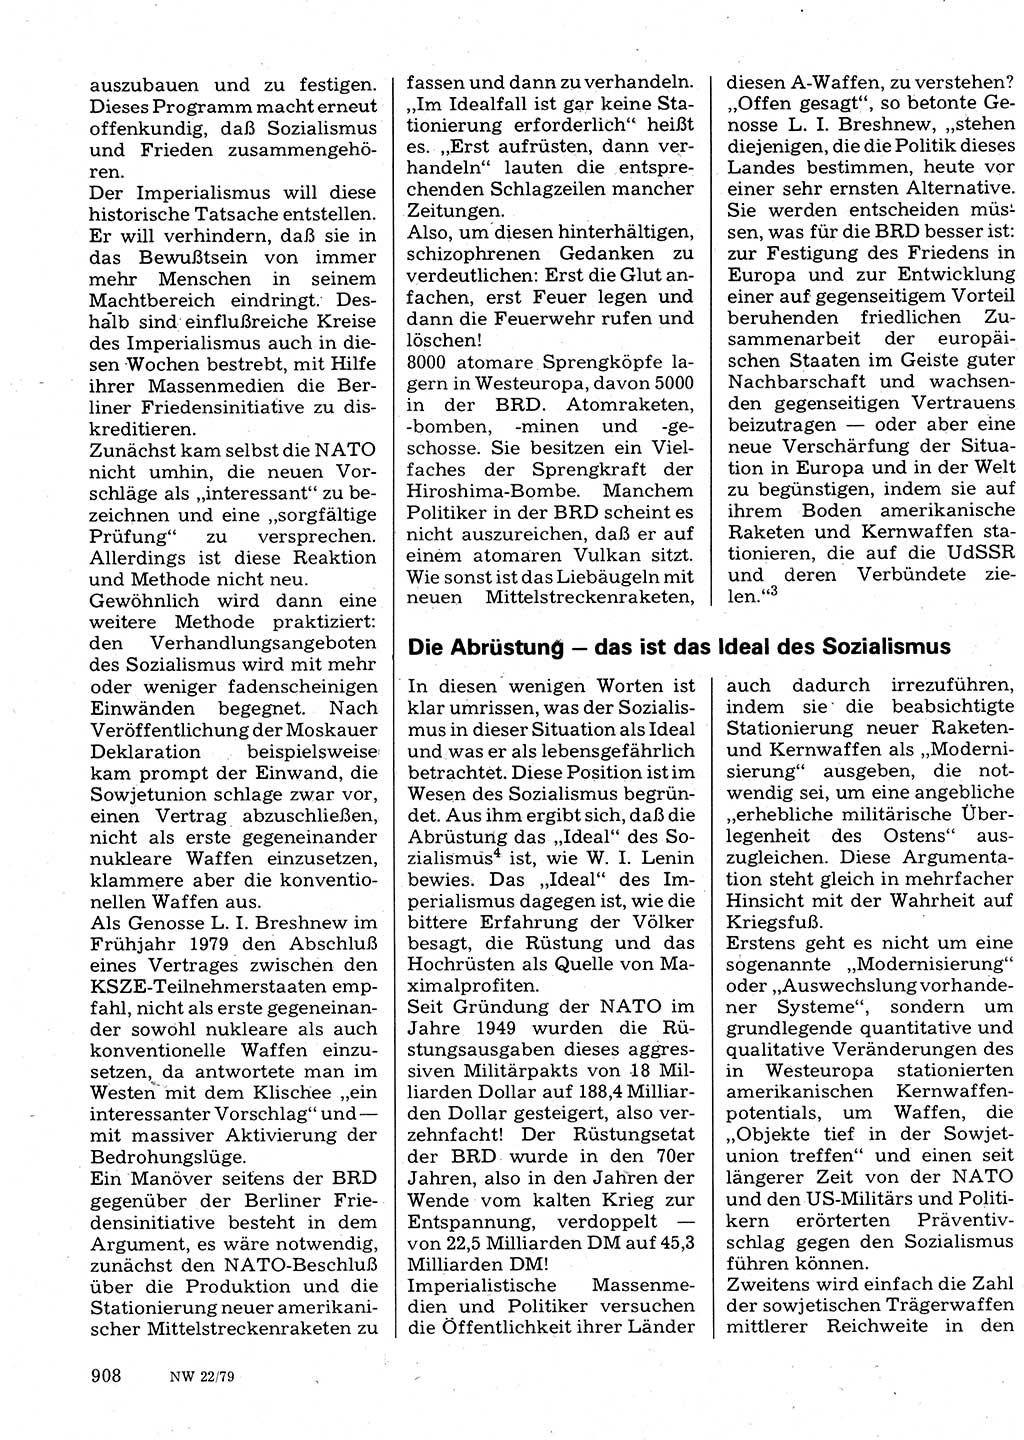 Neuer Weg (NW), Organ des Zentralkomitees (ZK) der SED (Sozialistische Einheitspartei Deutschlands) für Fragen des Parteilebens, 34. Jahrgang [Deutsche Demokratische Republik (DDR)] 1979, Seite 908 (NW ZK SED DDR 1979, S. 908)